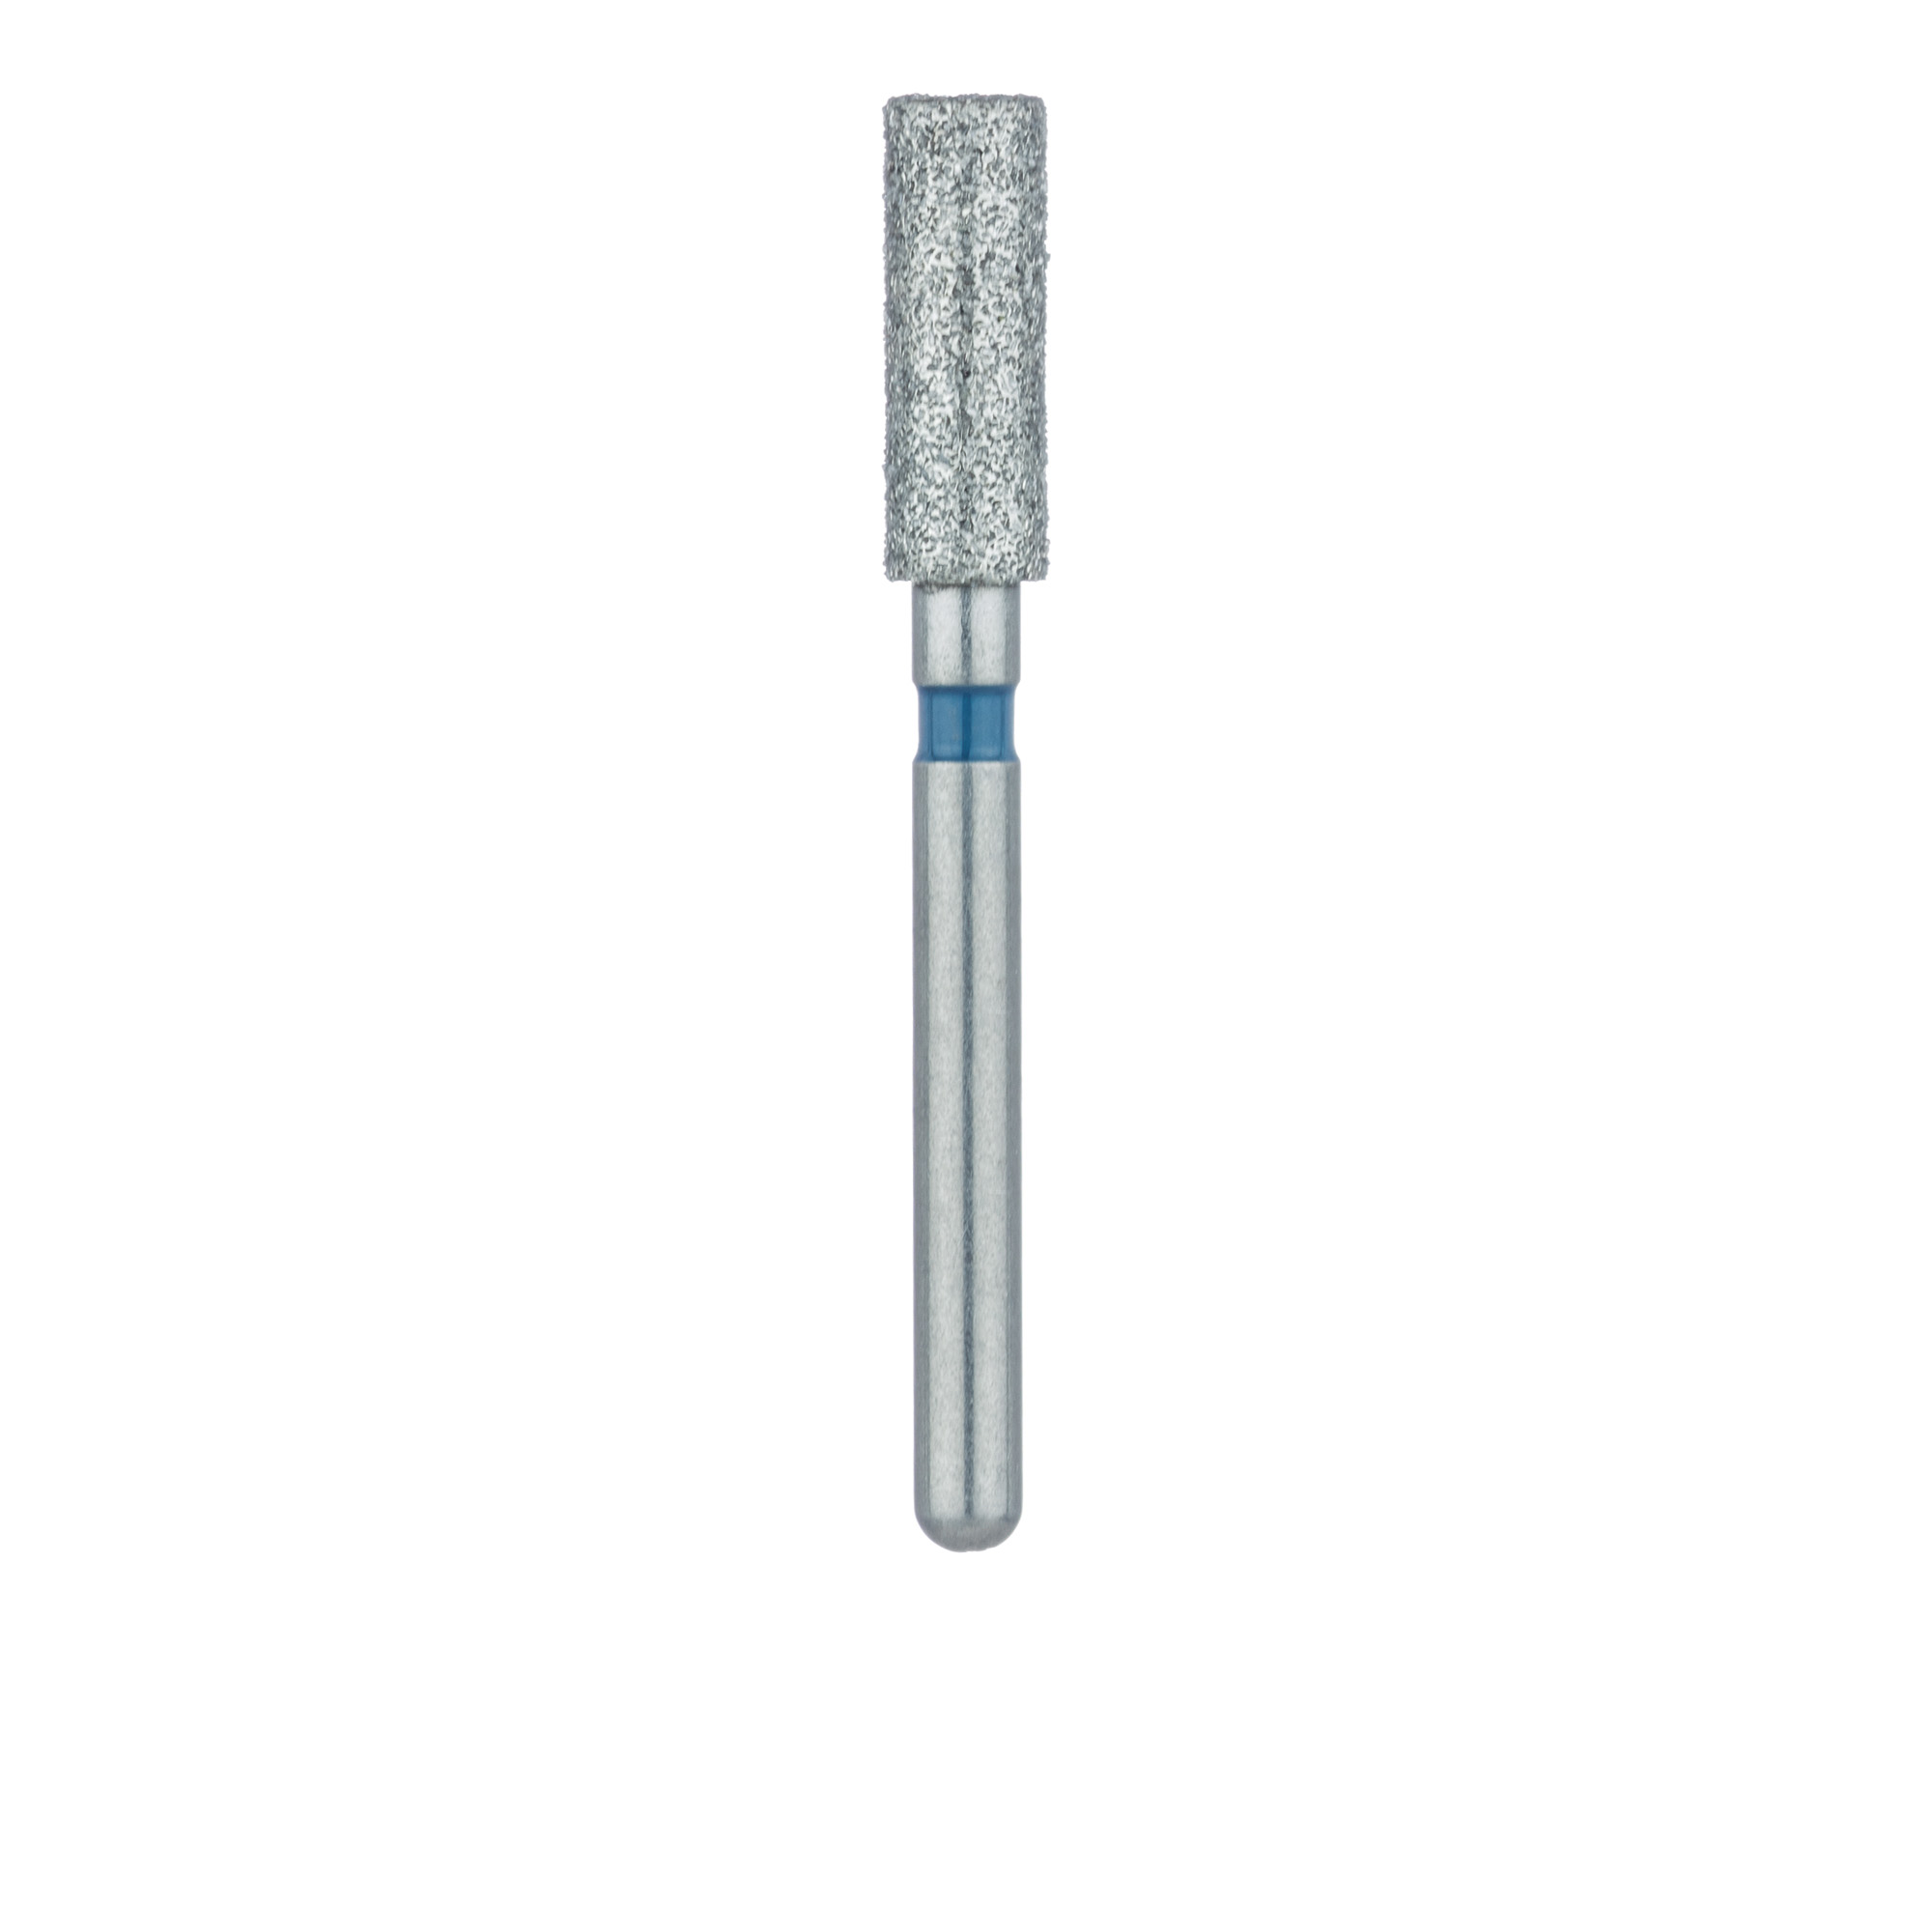 837-025-FG Long Cylinder Diamond Bur, 2.5mm Ø, Medium, FG